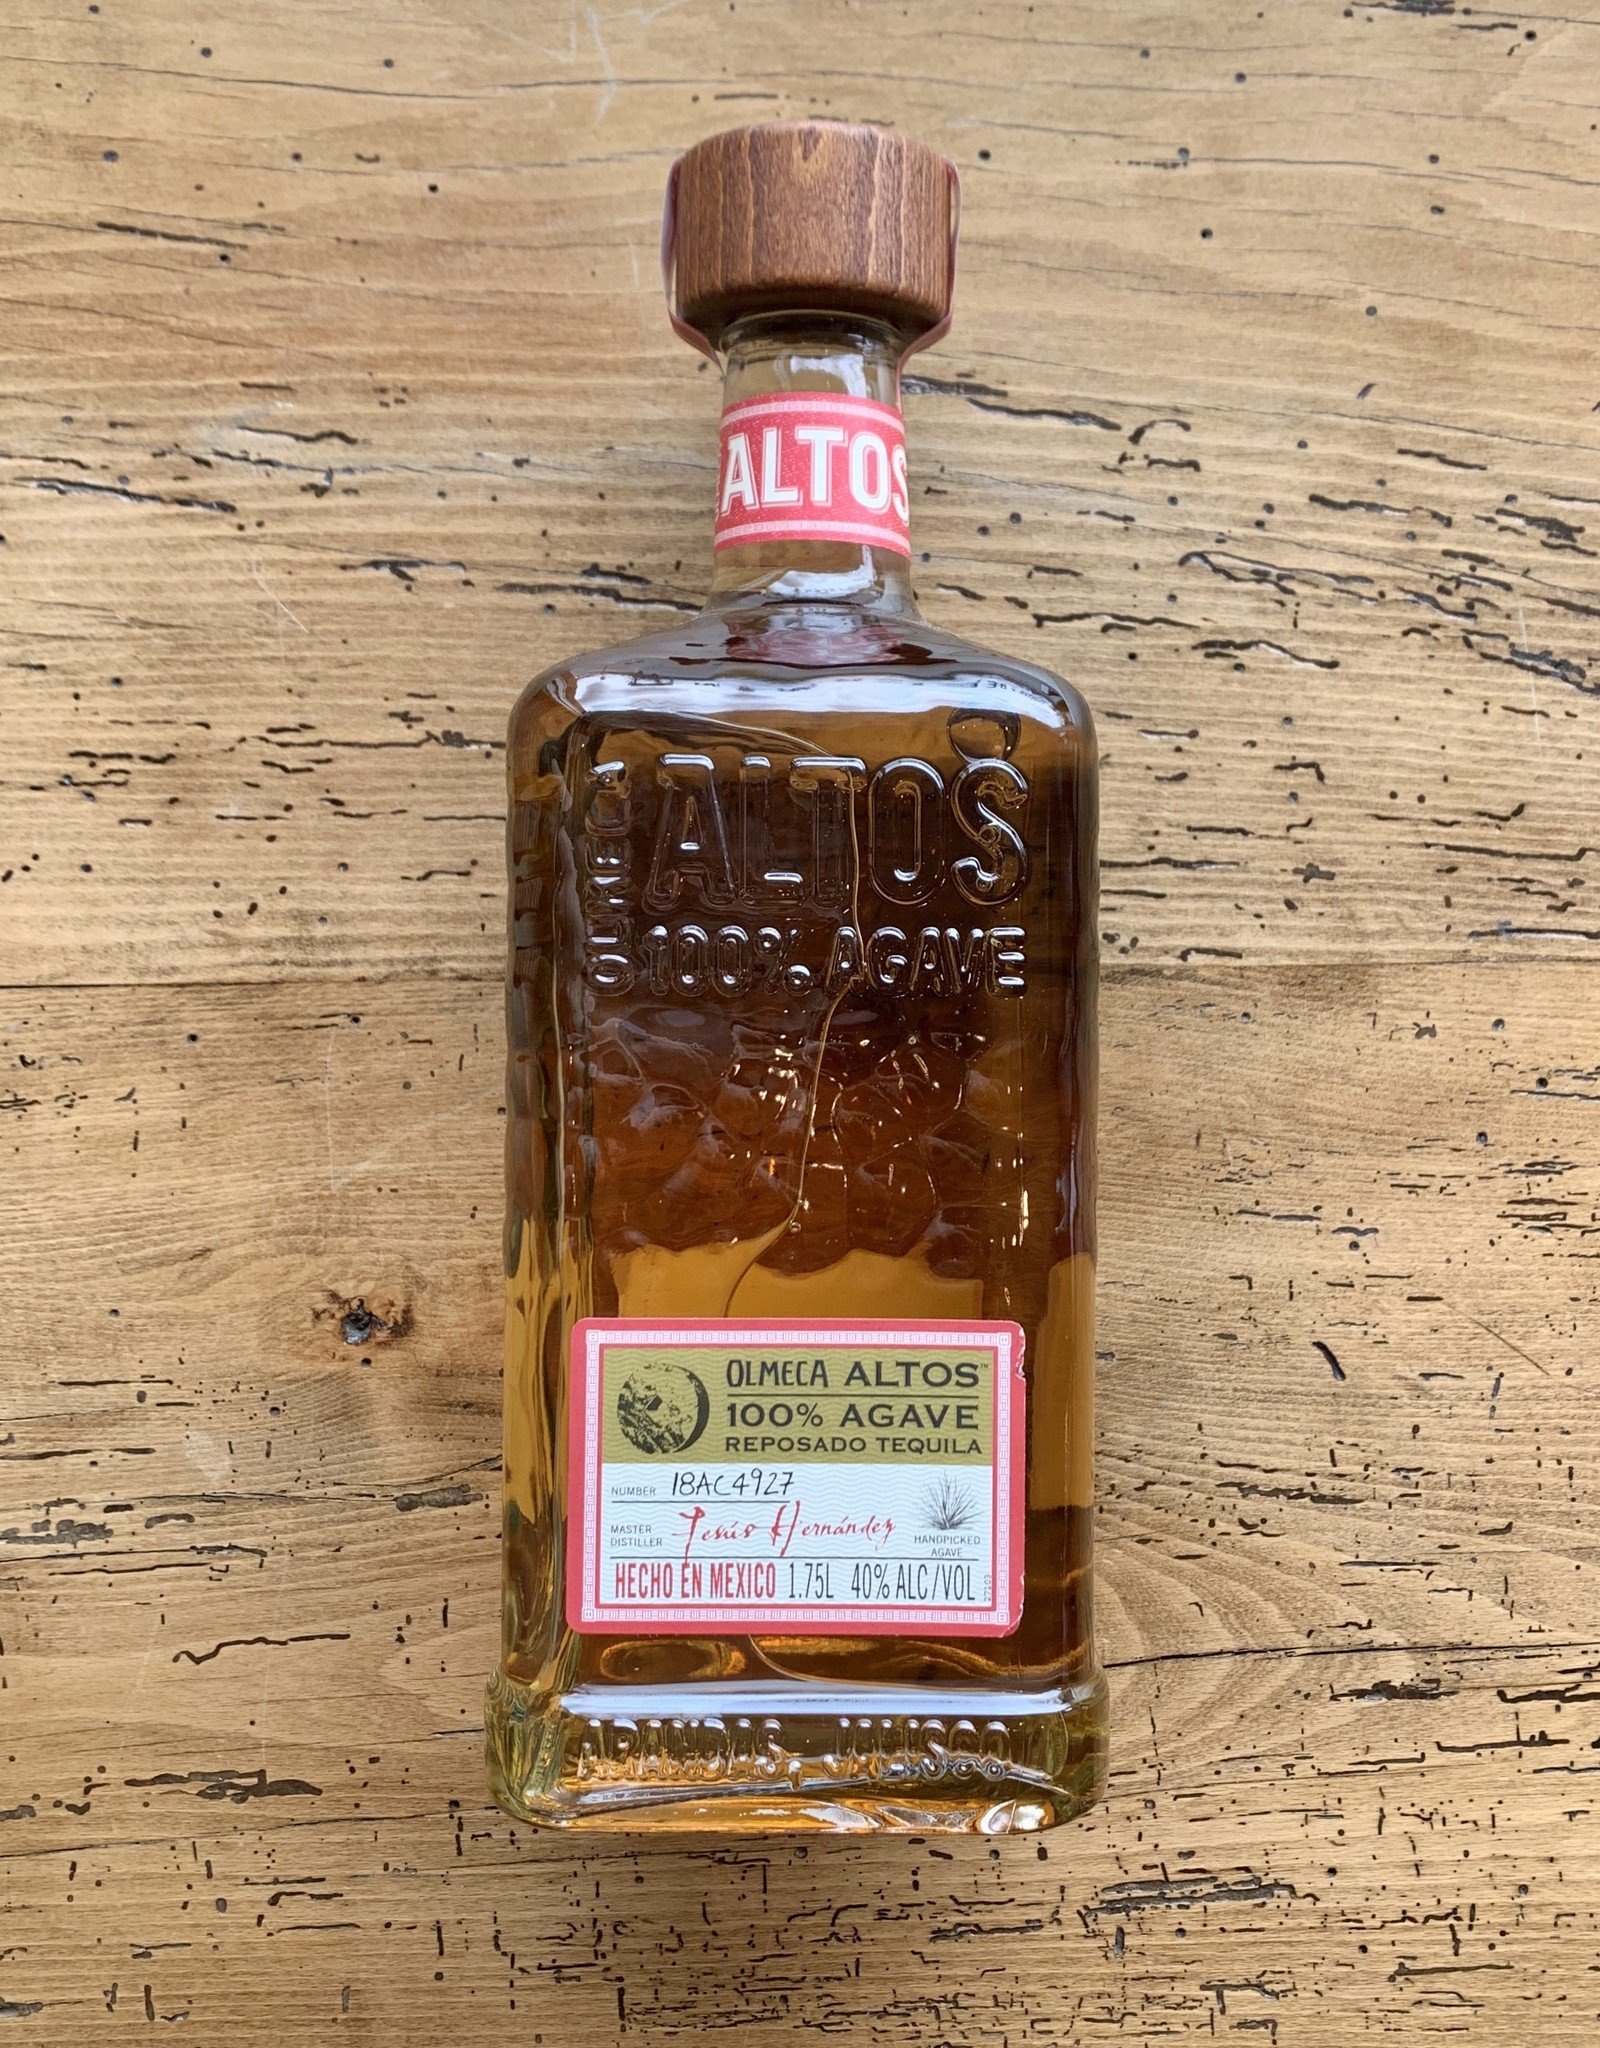 Altos Tequila Reposado 1.75